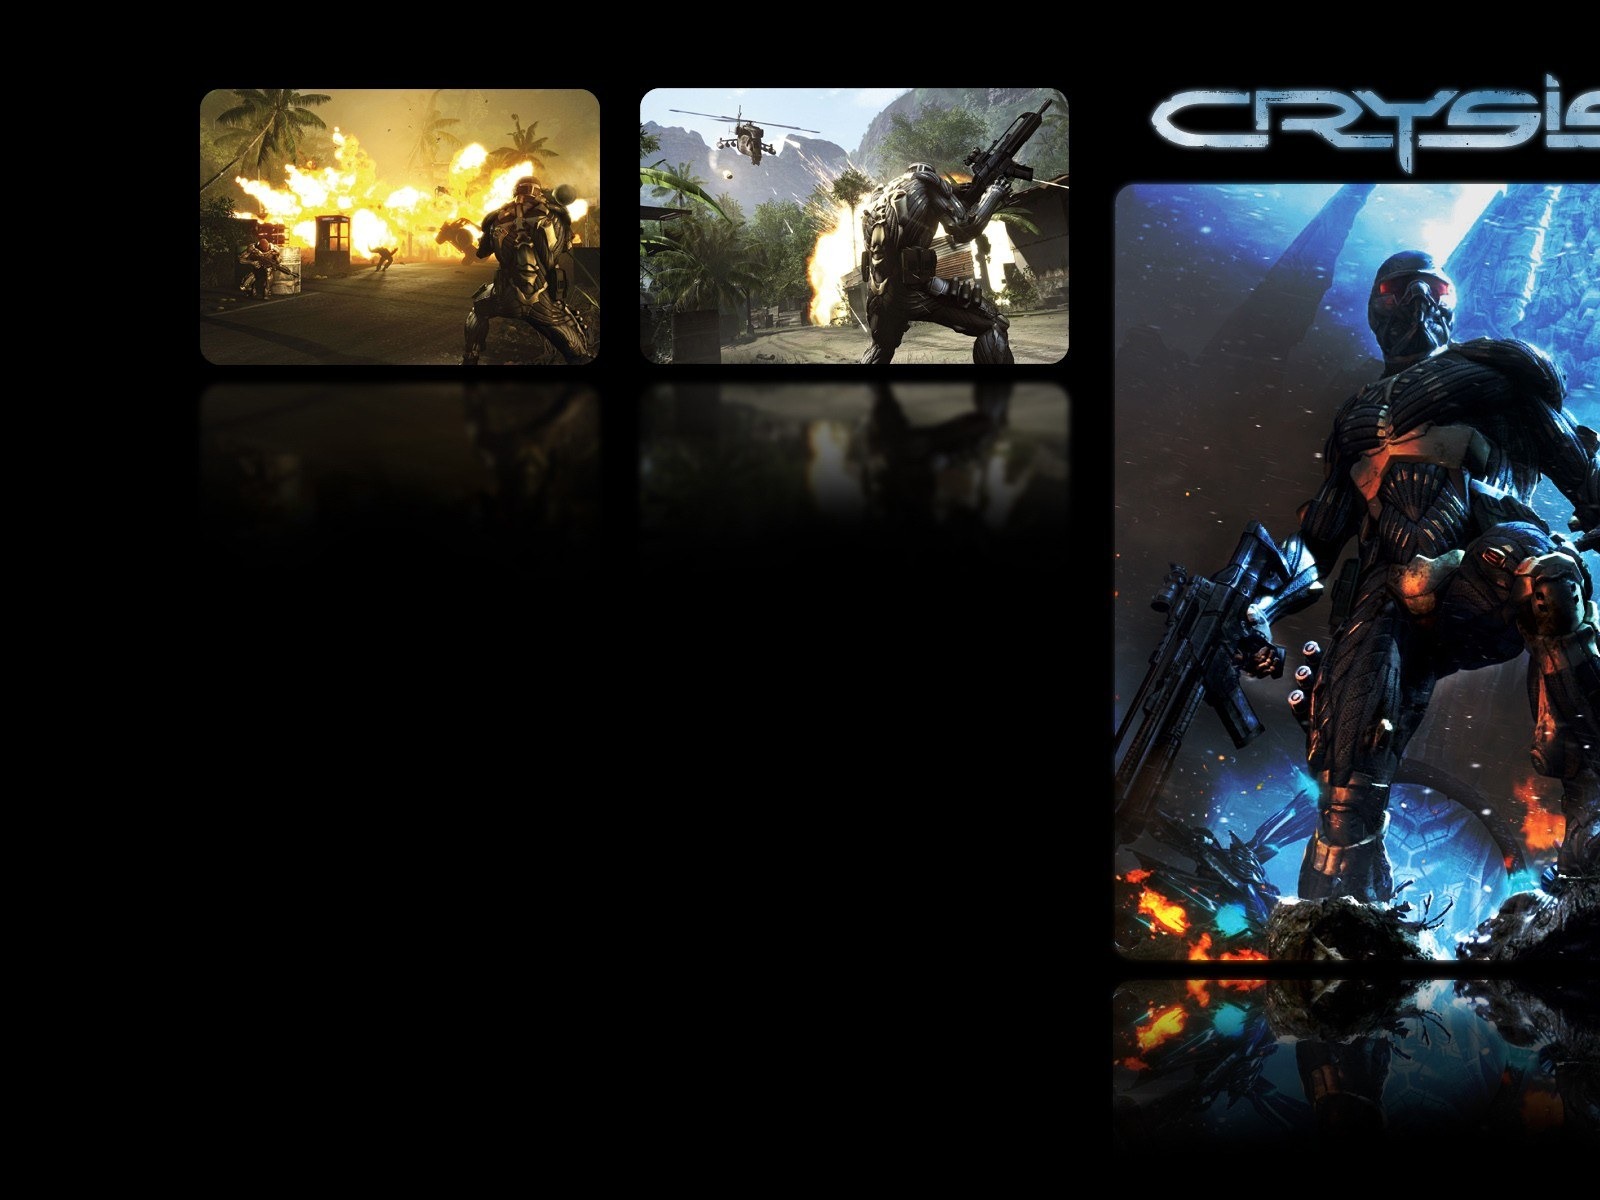  Crysisの壁紙(3) #21 - 1600x1200